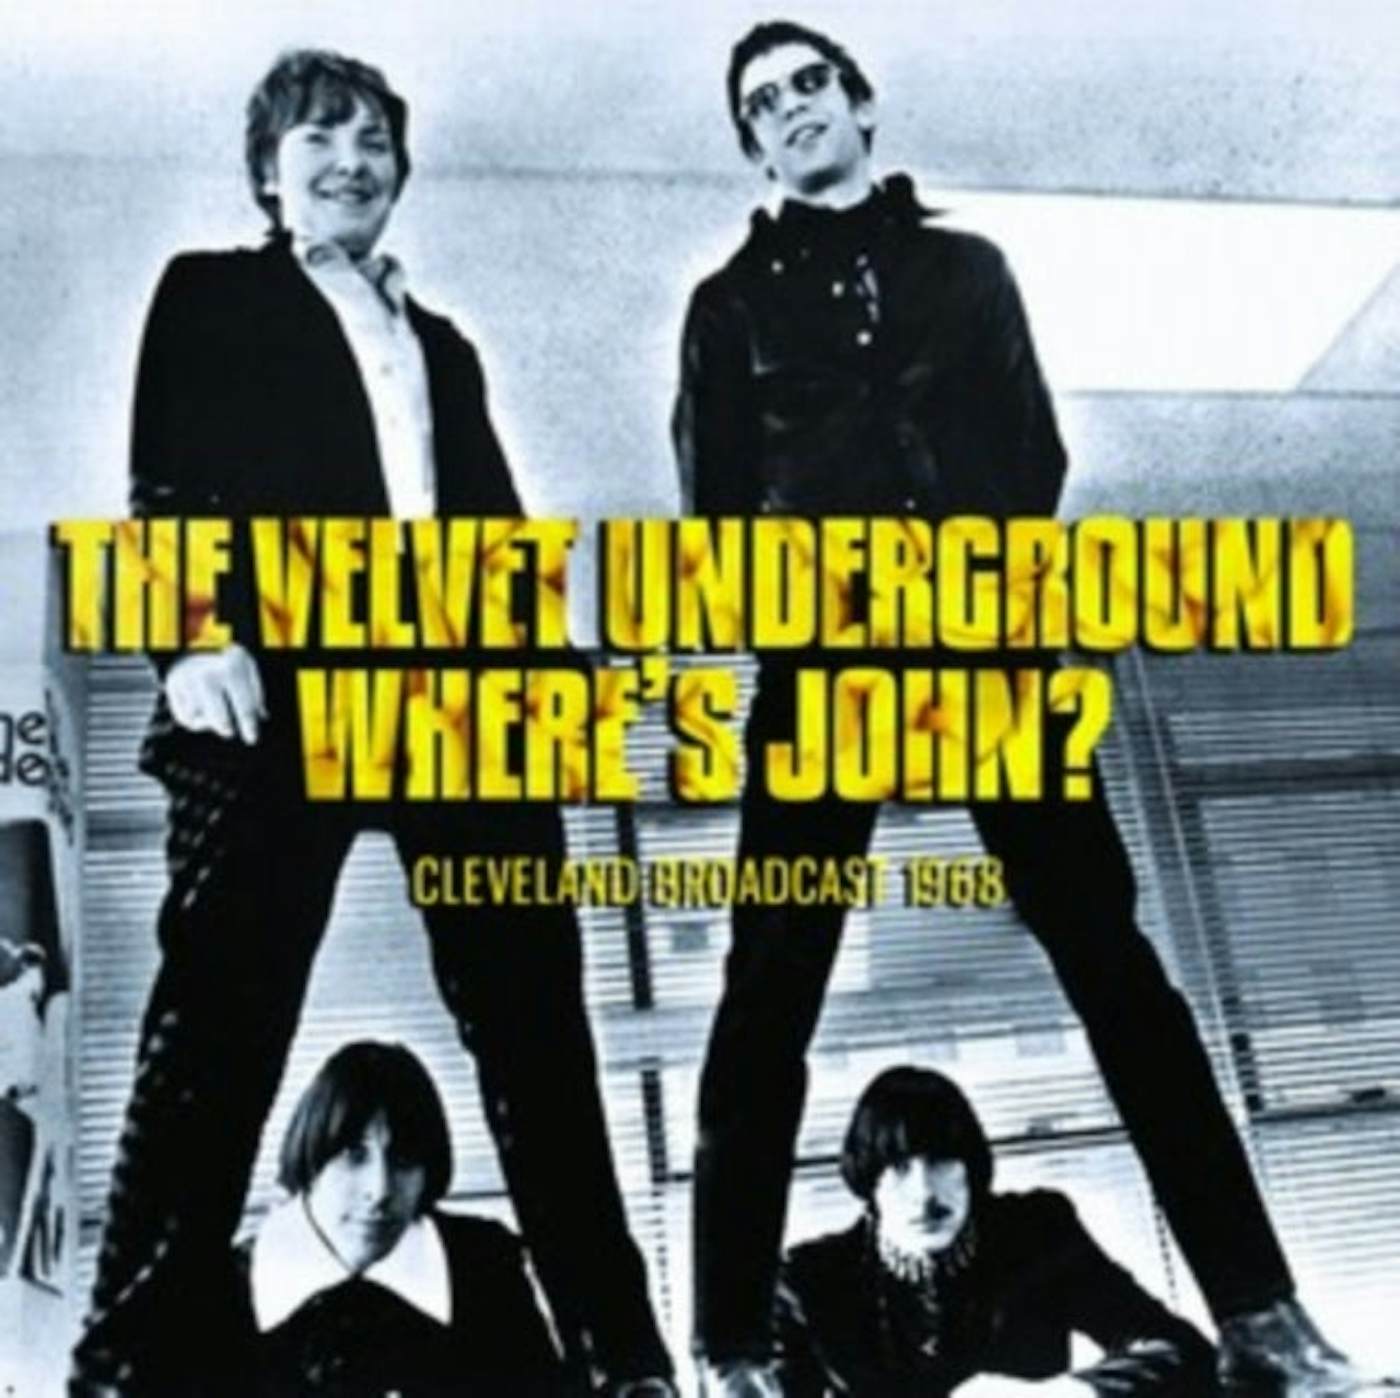 The Velvet Underground CD - Where's John?